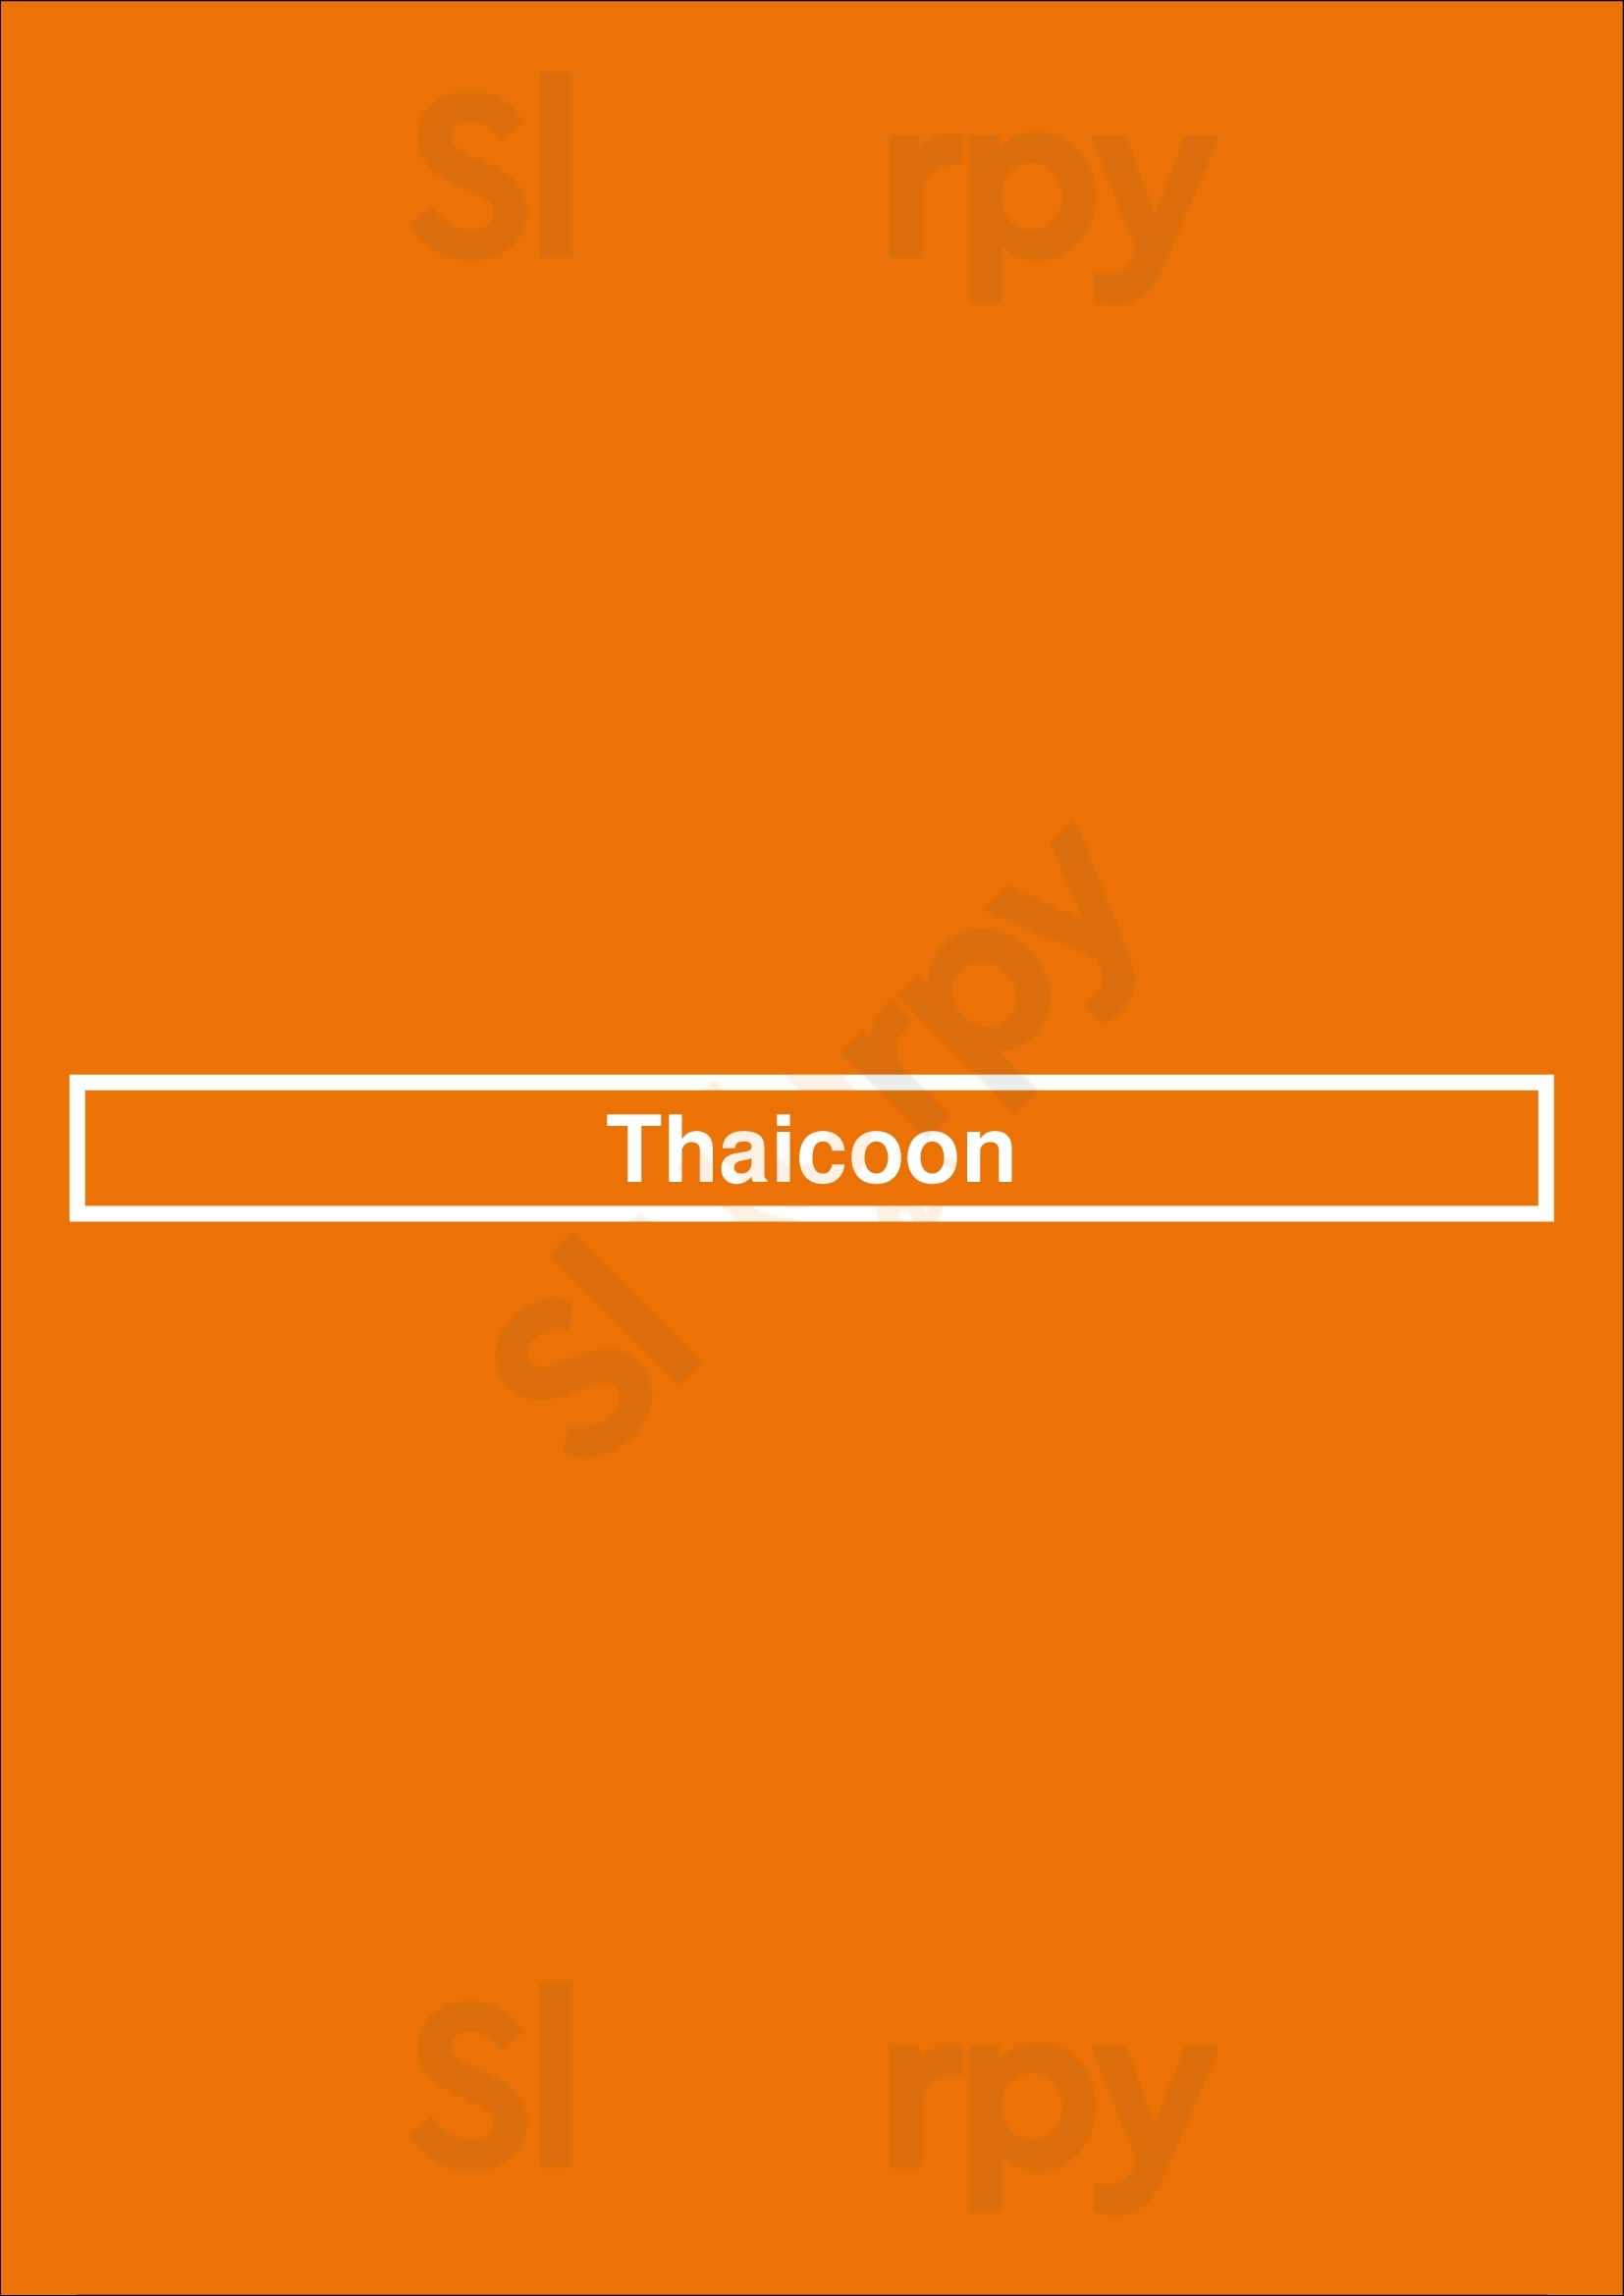 Thaicoon Almere Menu - 1